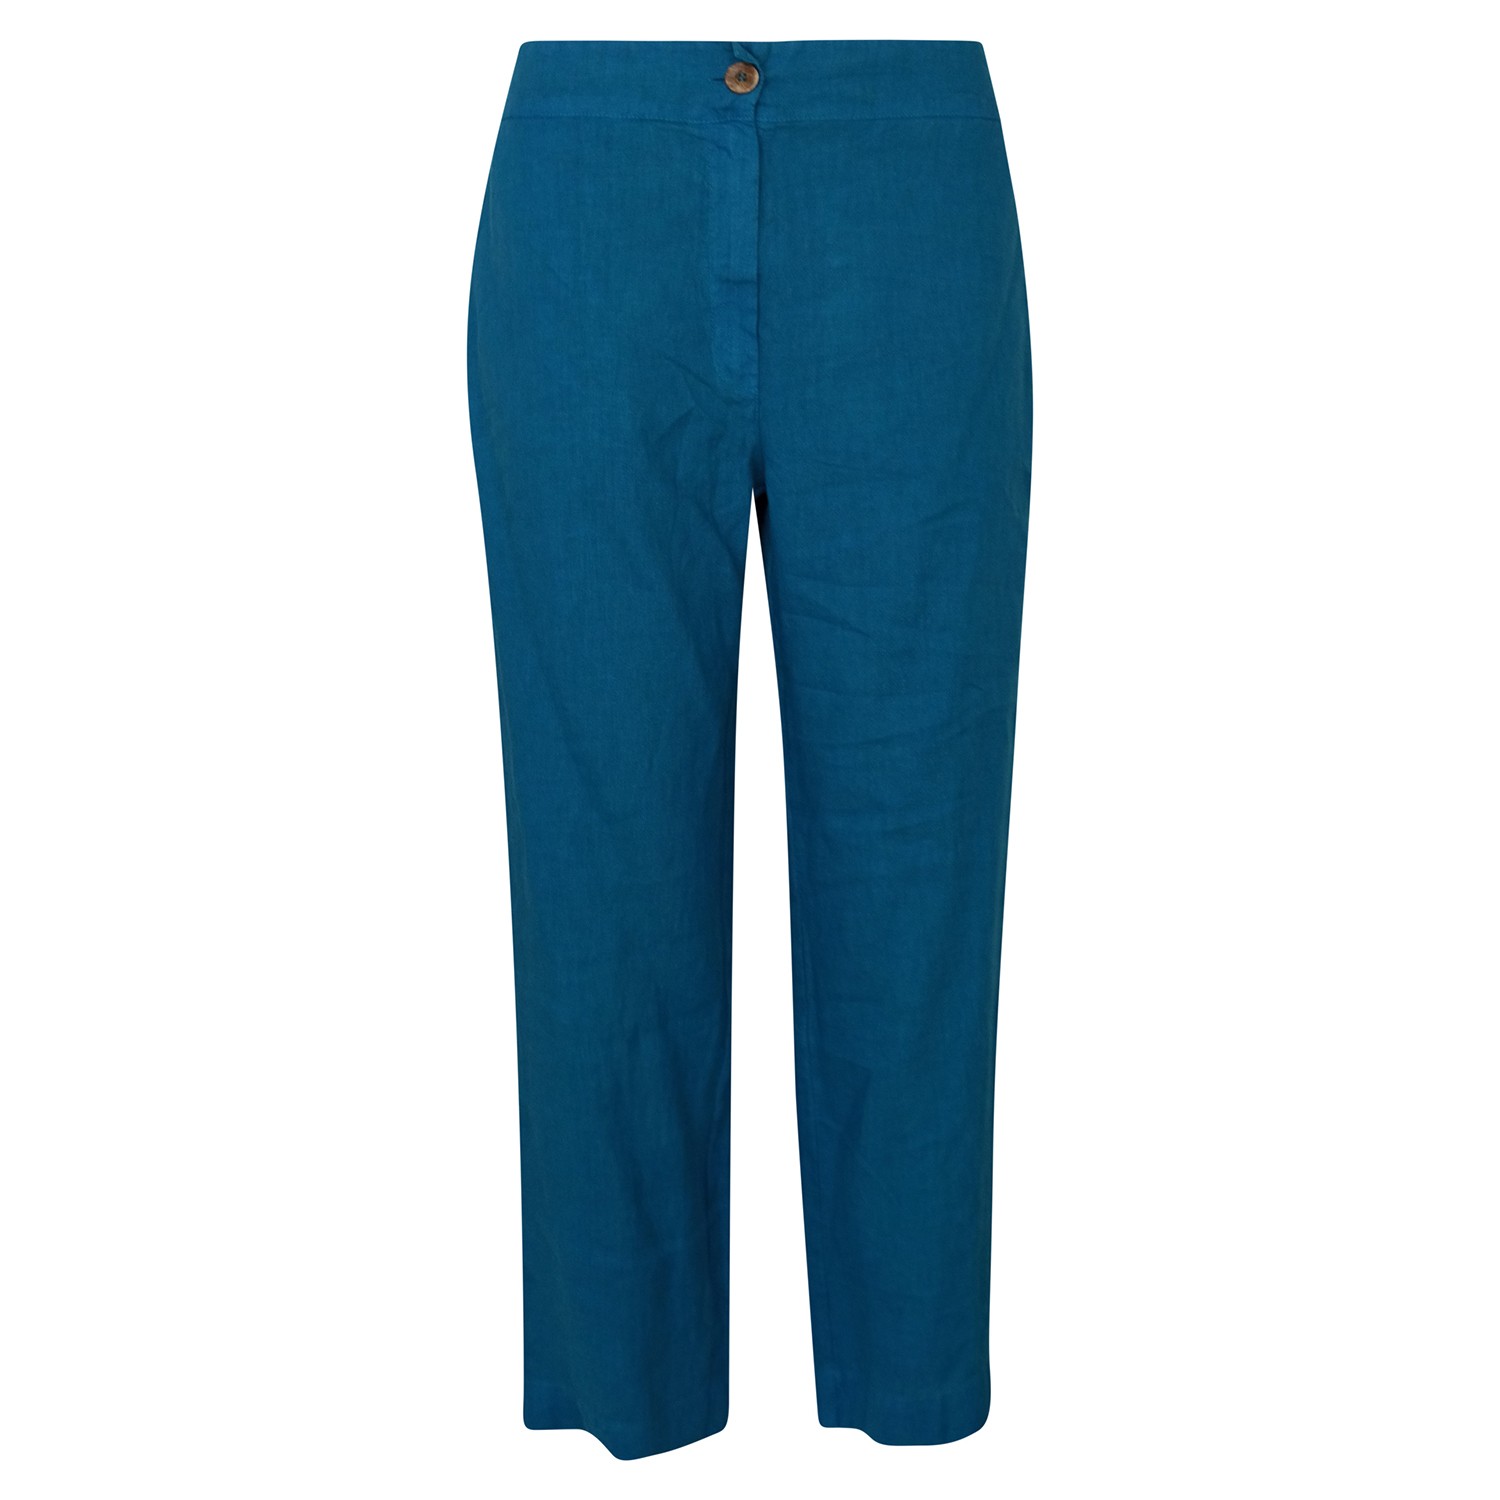 Haris Cotton Women's High Waisted Linen -blend Pants With External Pockets - Aegean Blue